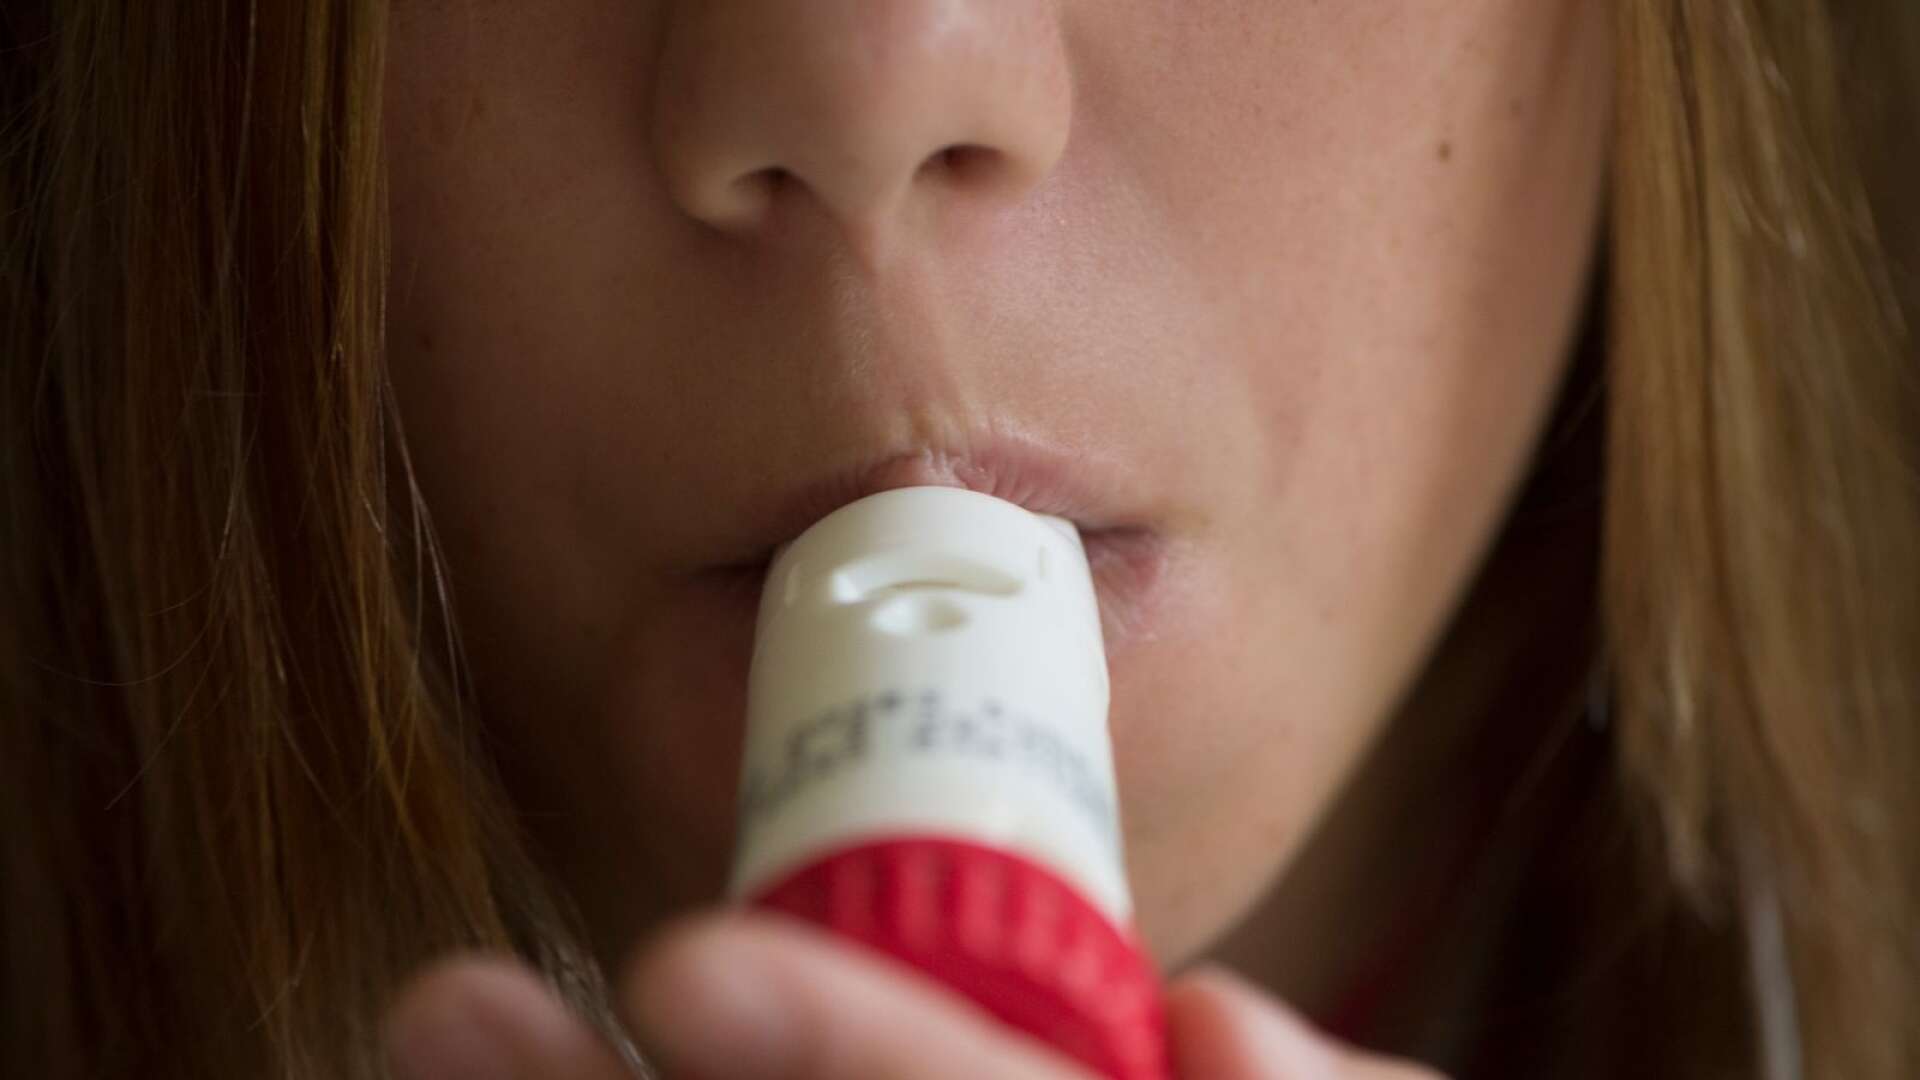 Att leva med astma är som att stundtals tvingas andas genom ett sugrör, skriver Sofie Wadelius och Ingalill Bjöörn.